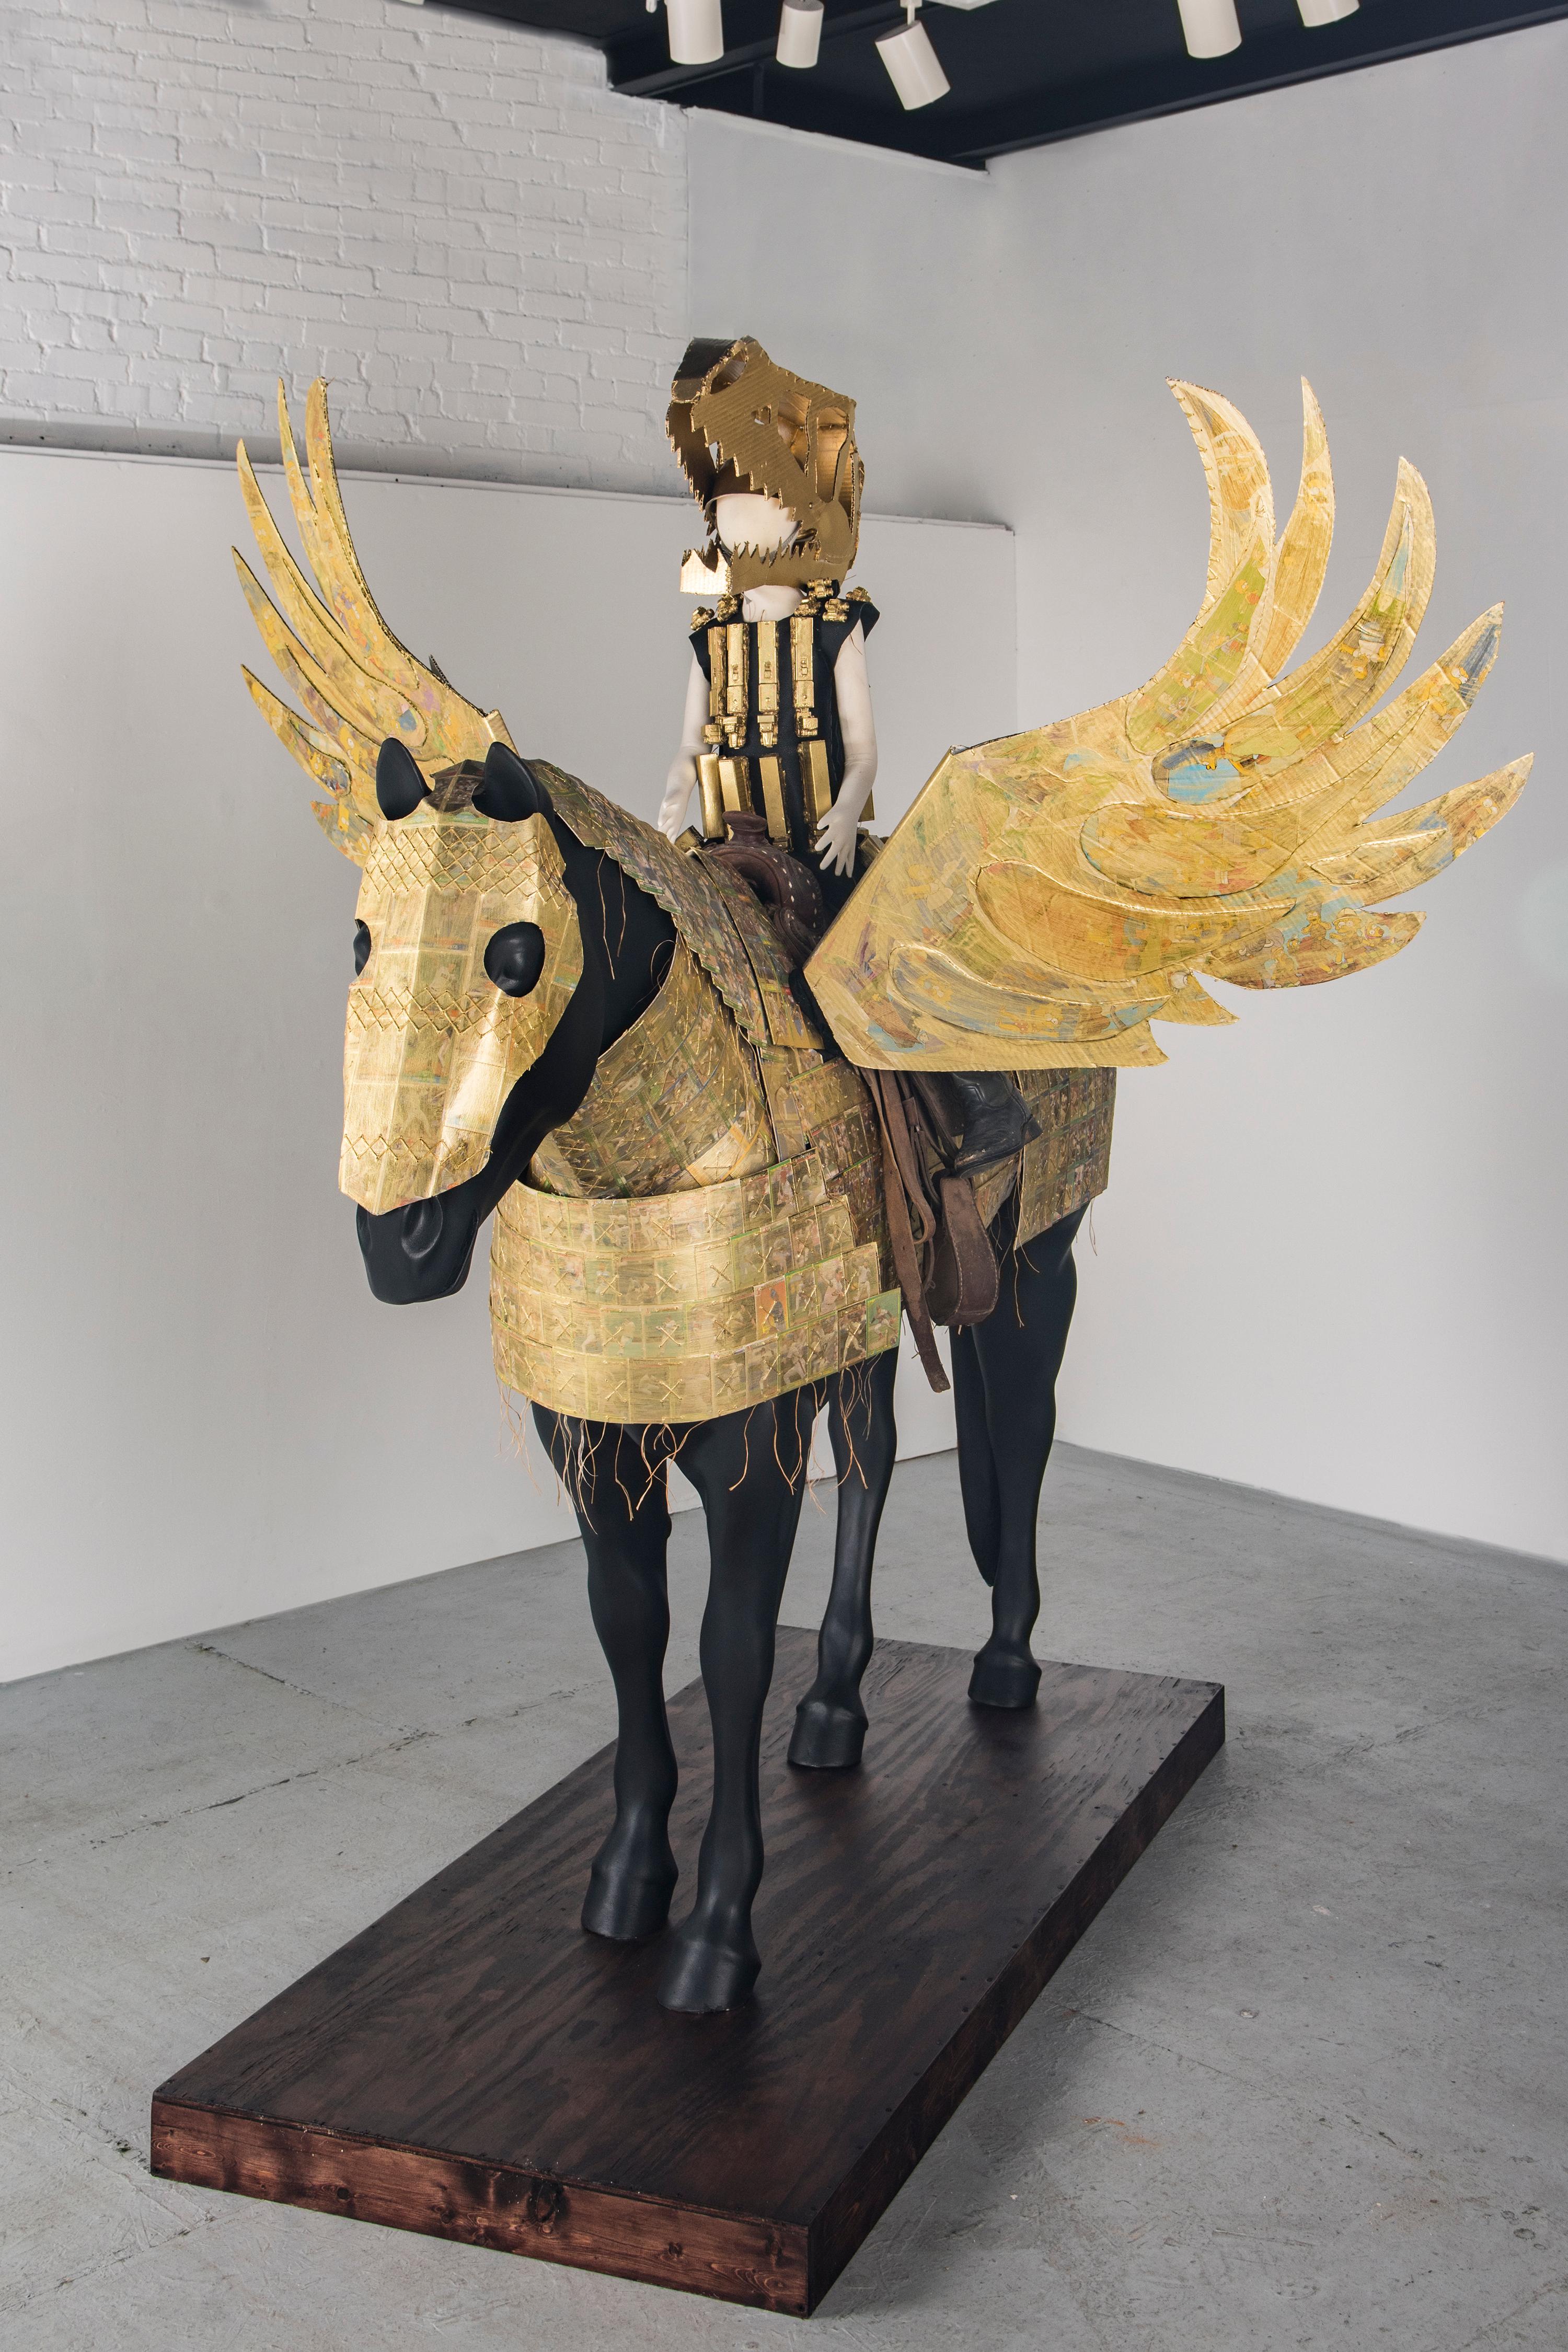 Figurative Sculpture Joshua Goode - Sculpture grandeur nature d'une figure humaine sur un cheval : "Golden Pegasus Armor" (Armure d'or de Pegasus)